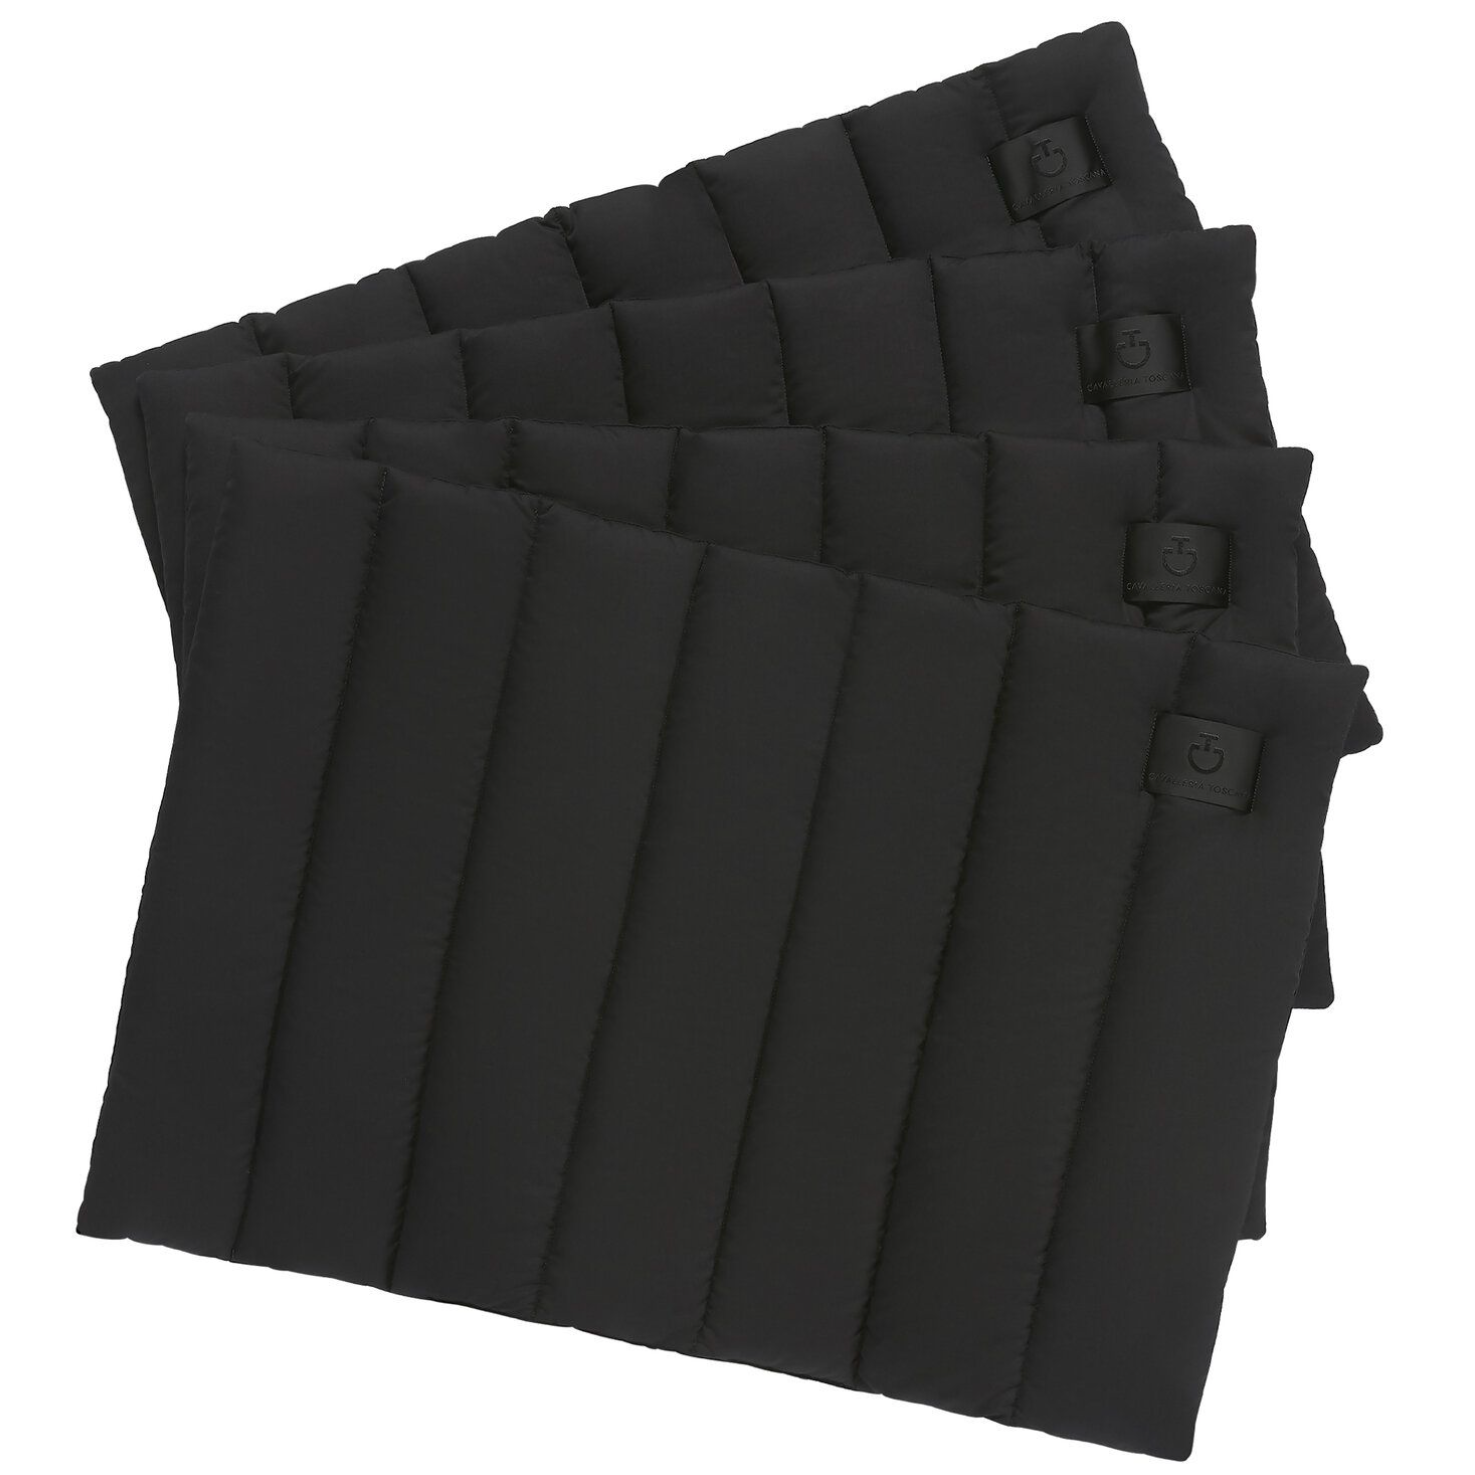 CAVALLERIA TOSCANA 4er Set Bandagierunterlagen aus Baumwolle in schwarz.